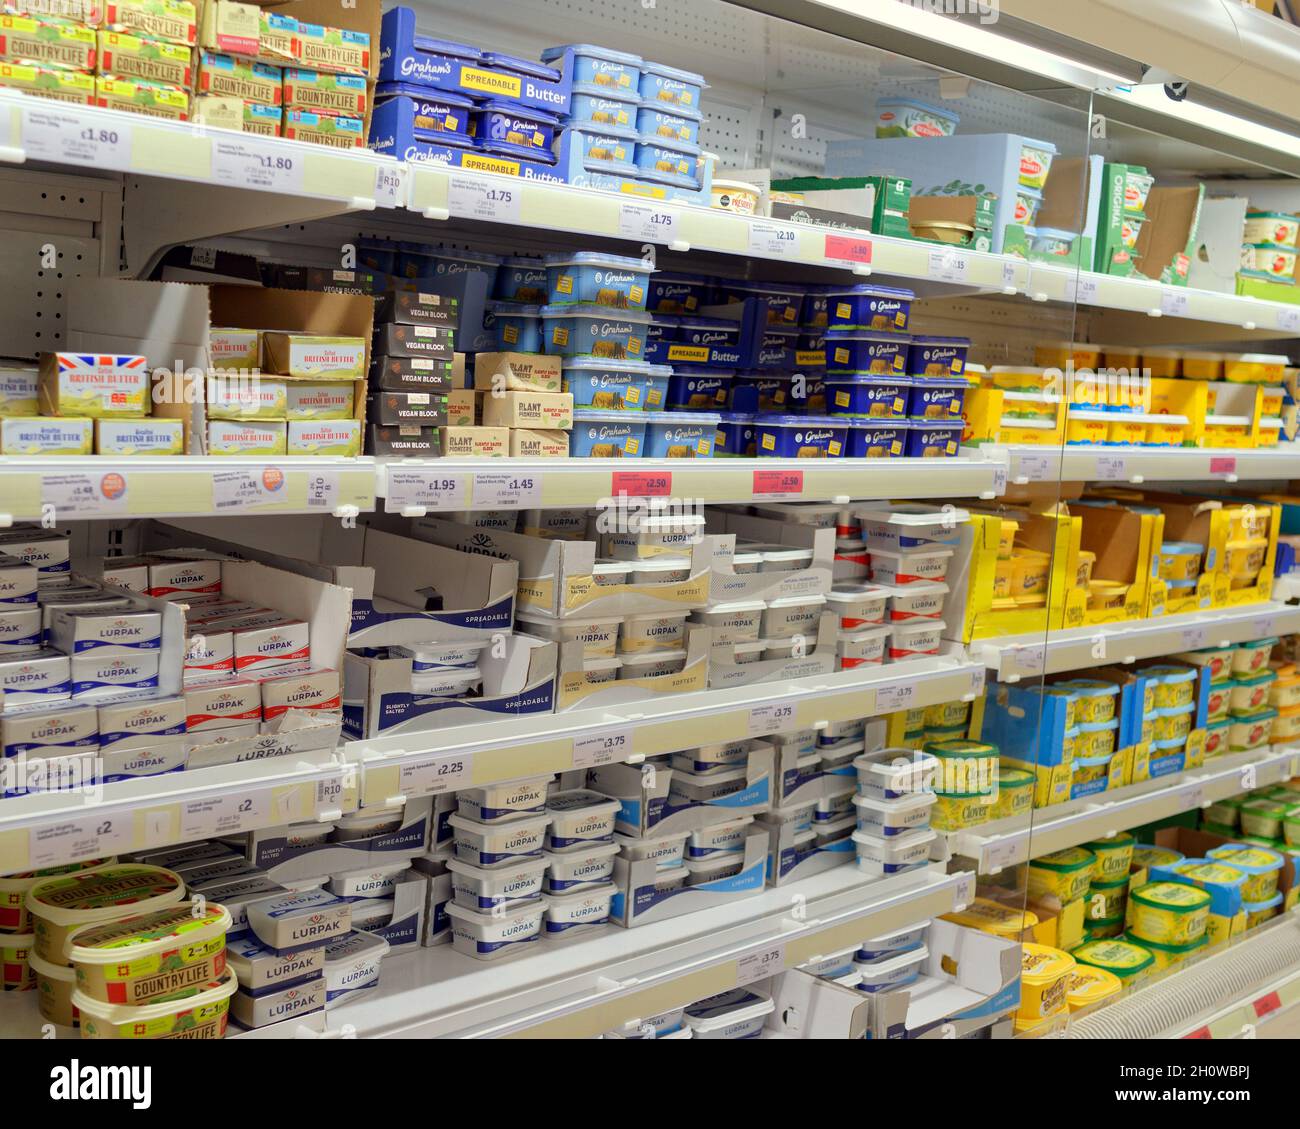 Glasgow, Écosse, Royaume-Uni 14 octobre 2021.Les étagères et l'approvisionnement des supermarchés ont vu le stock variable à sainsburys ce soir, car les différentes sections étaient vides ou débordaient.Les produits laitiers frais et le beurre étaient pleins / crédit Gerard Ferry / Alamy Live News Banque D'Images